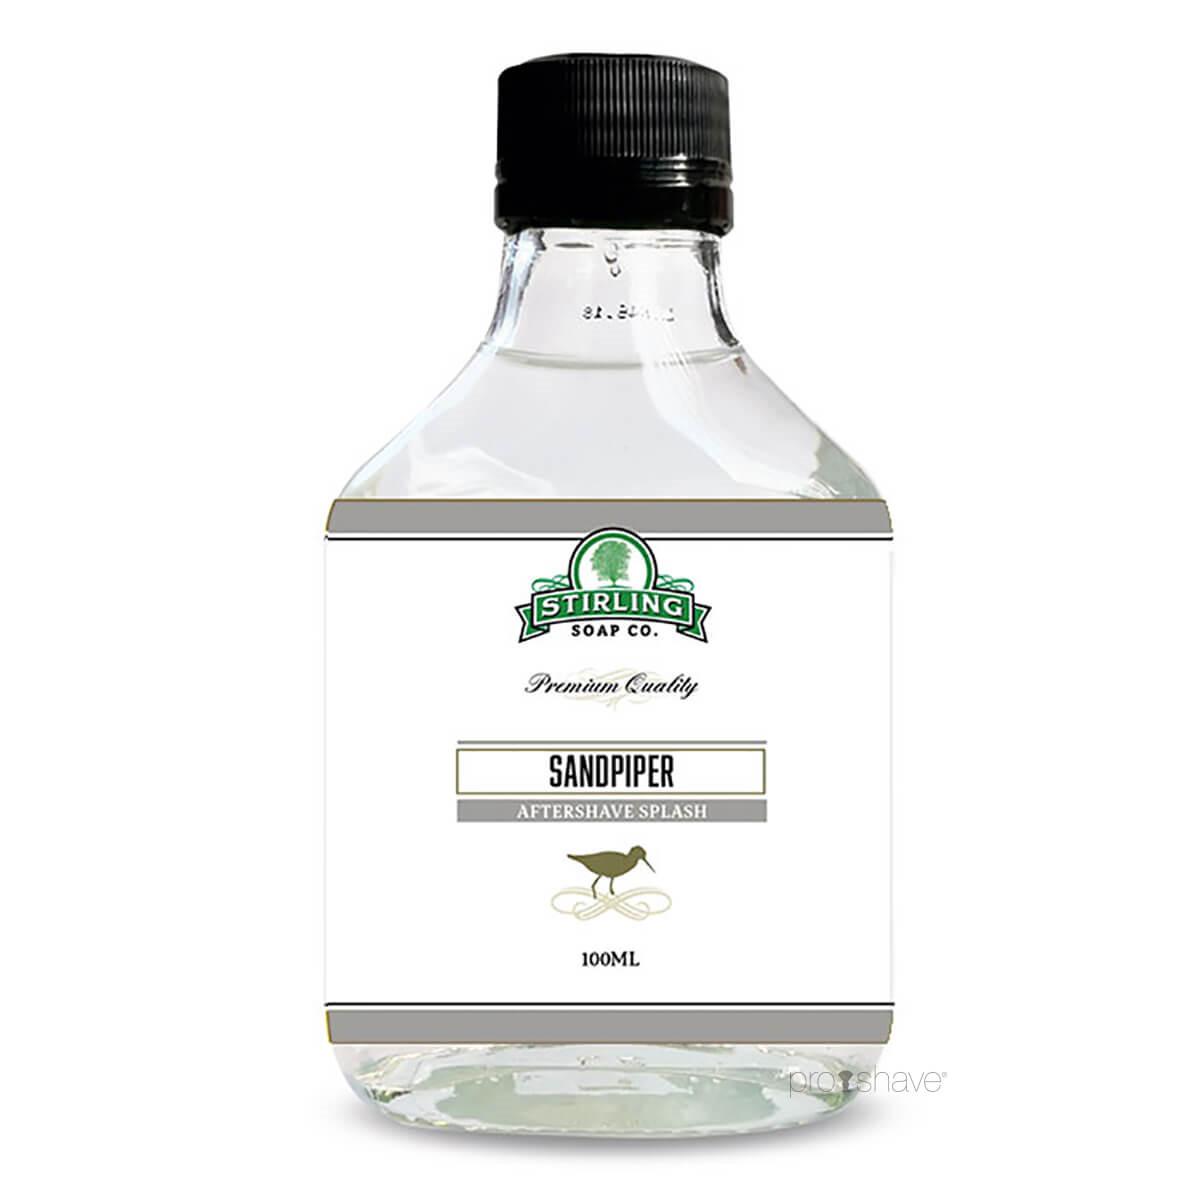 Stirling Soap Co. Aftershave Splash, Sandpiper, 100 ml.